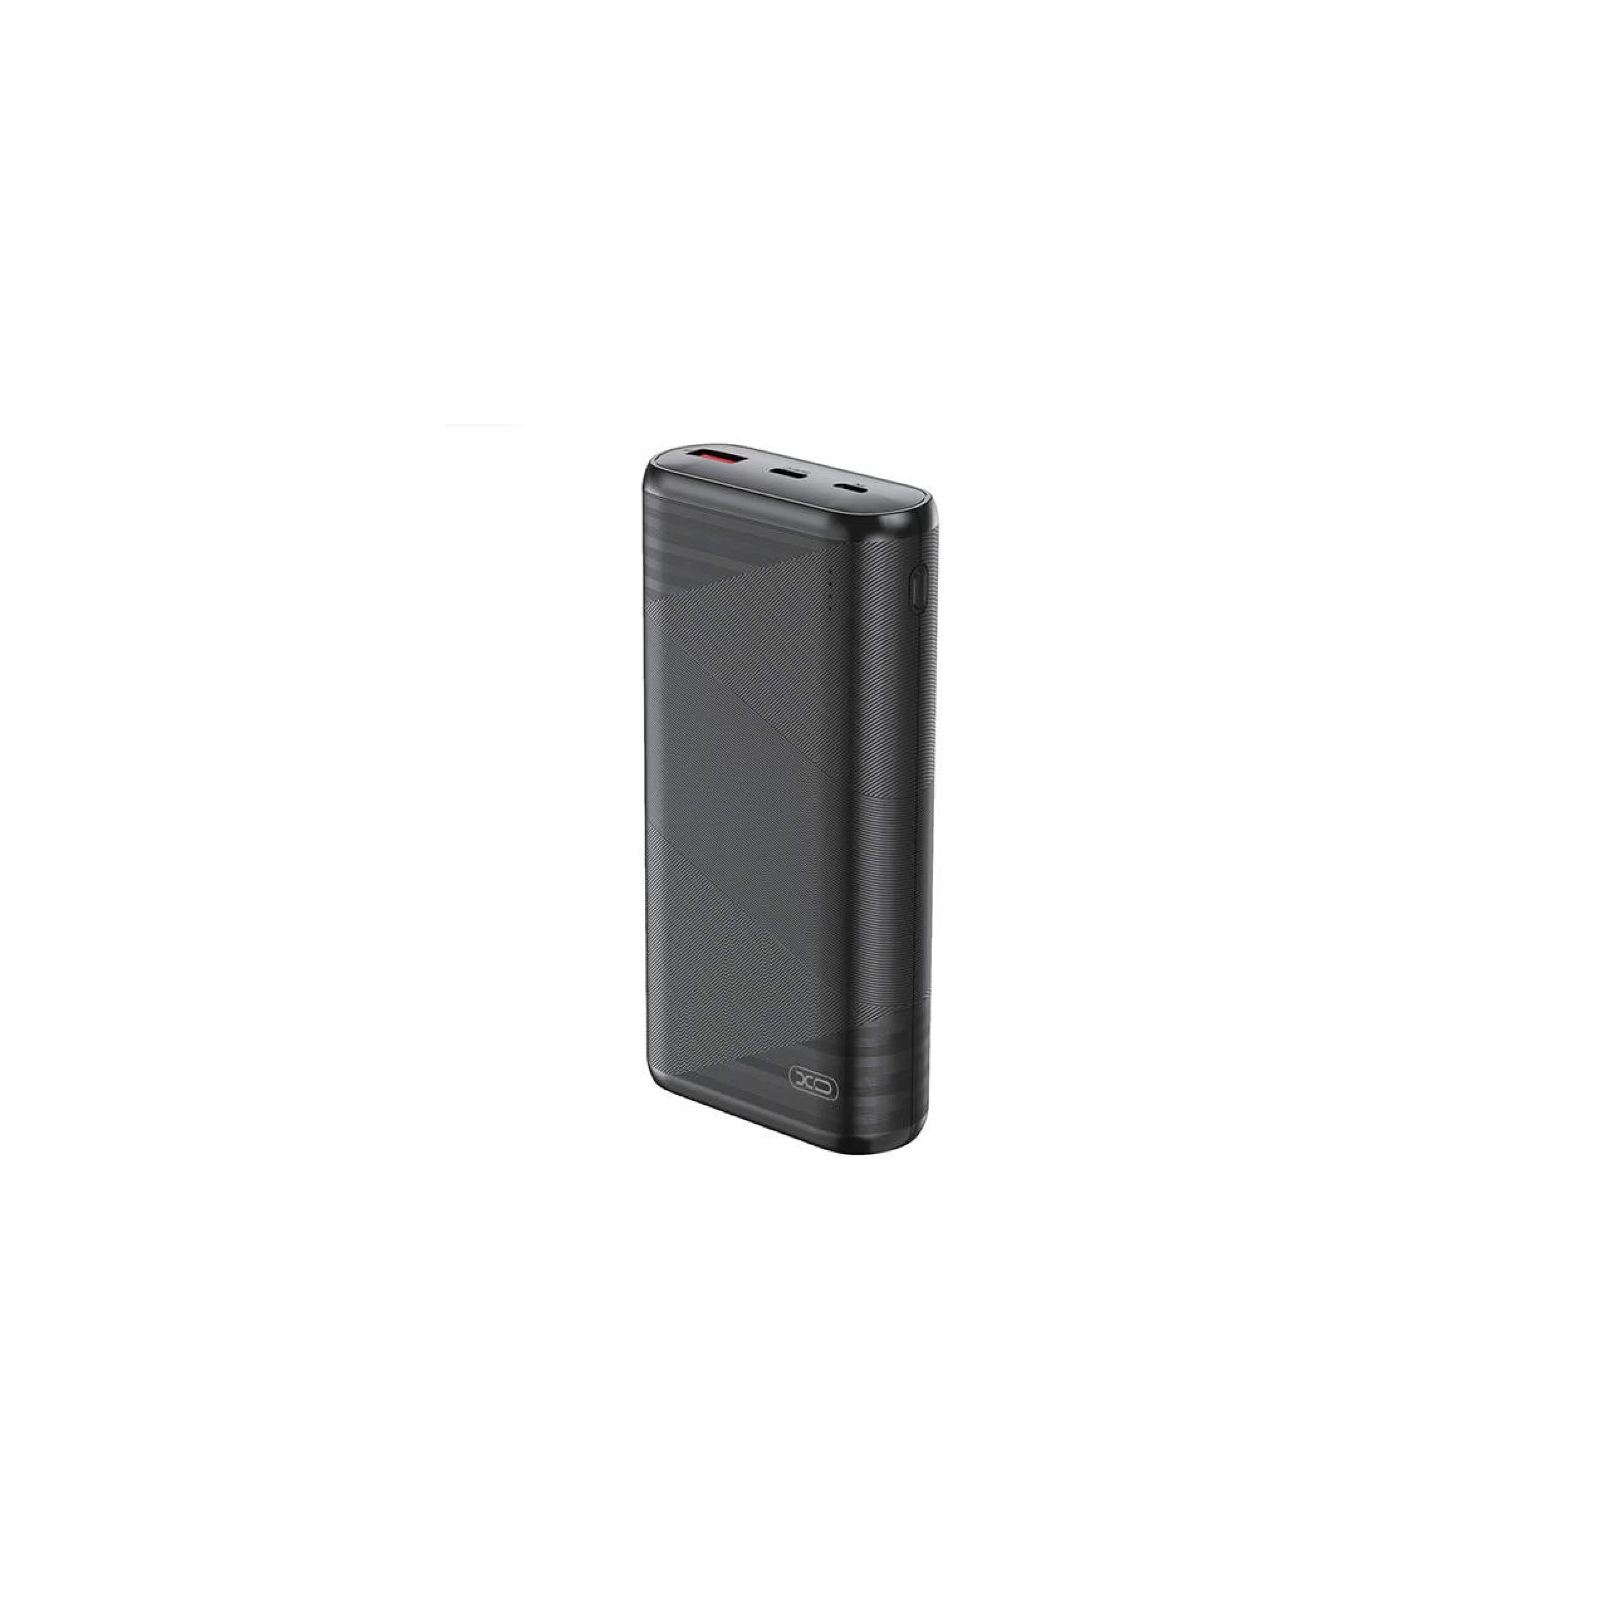 Батарея универсальная XO 20000mAh, PD/20W, QC/18W, Type-C & USB-A, black (PR150)